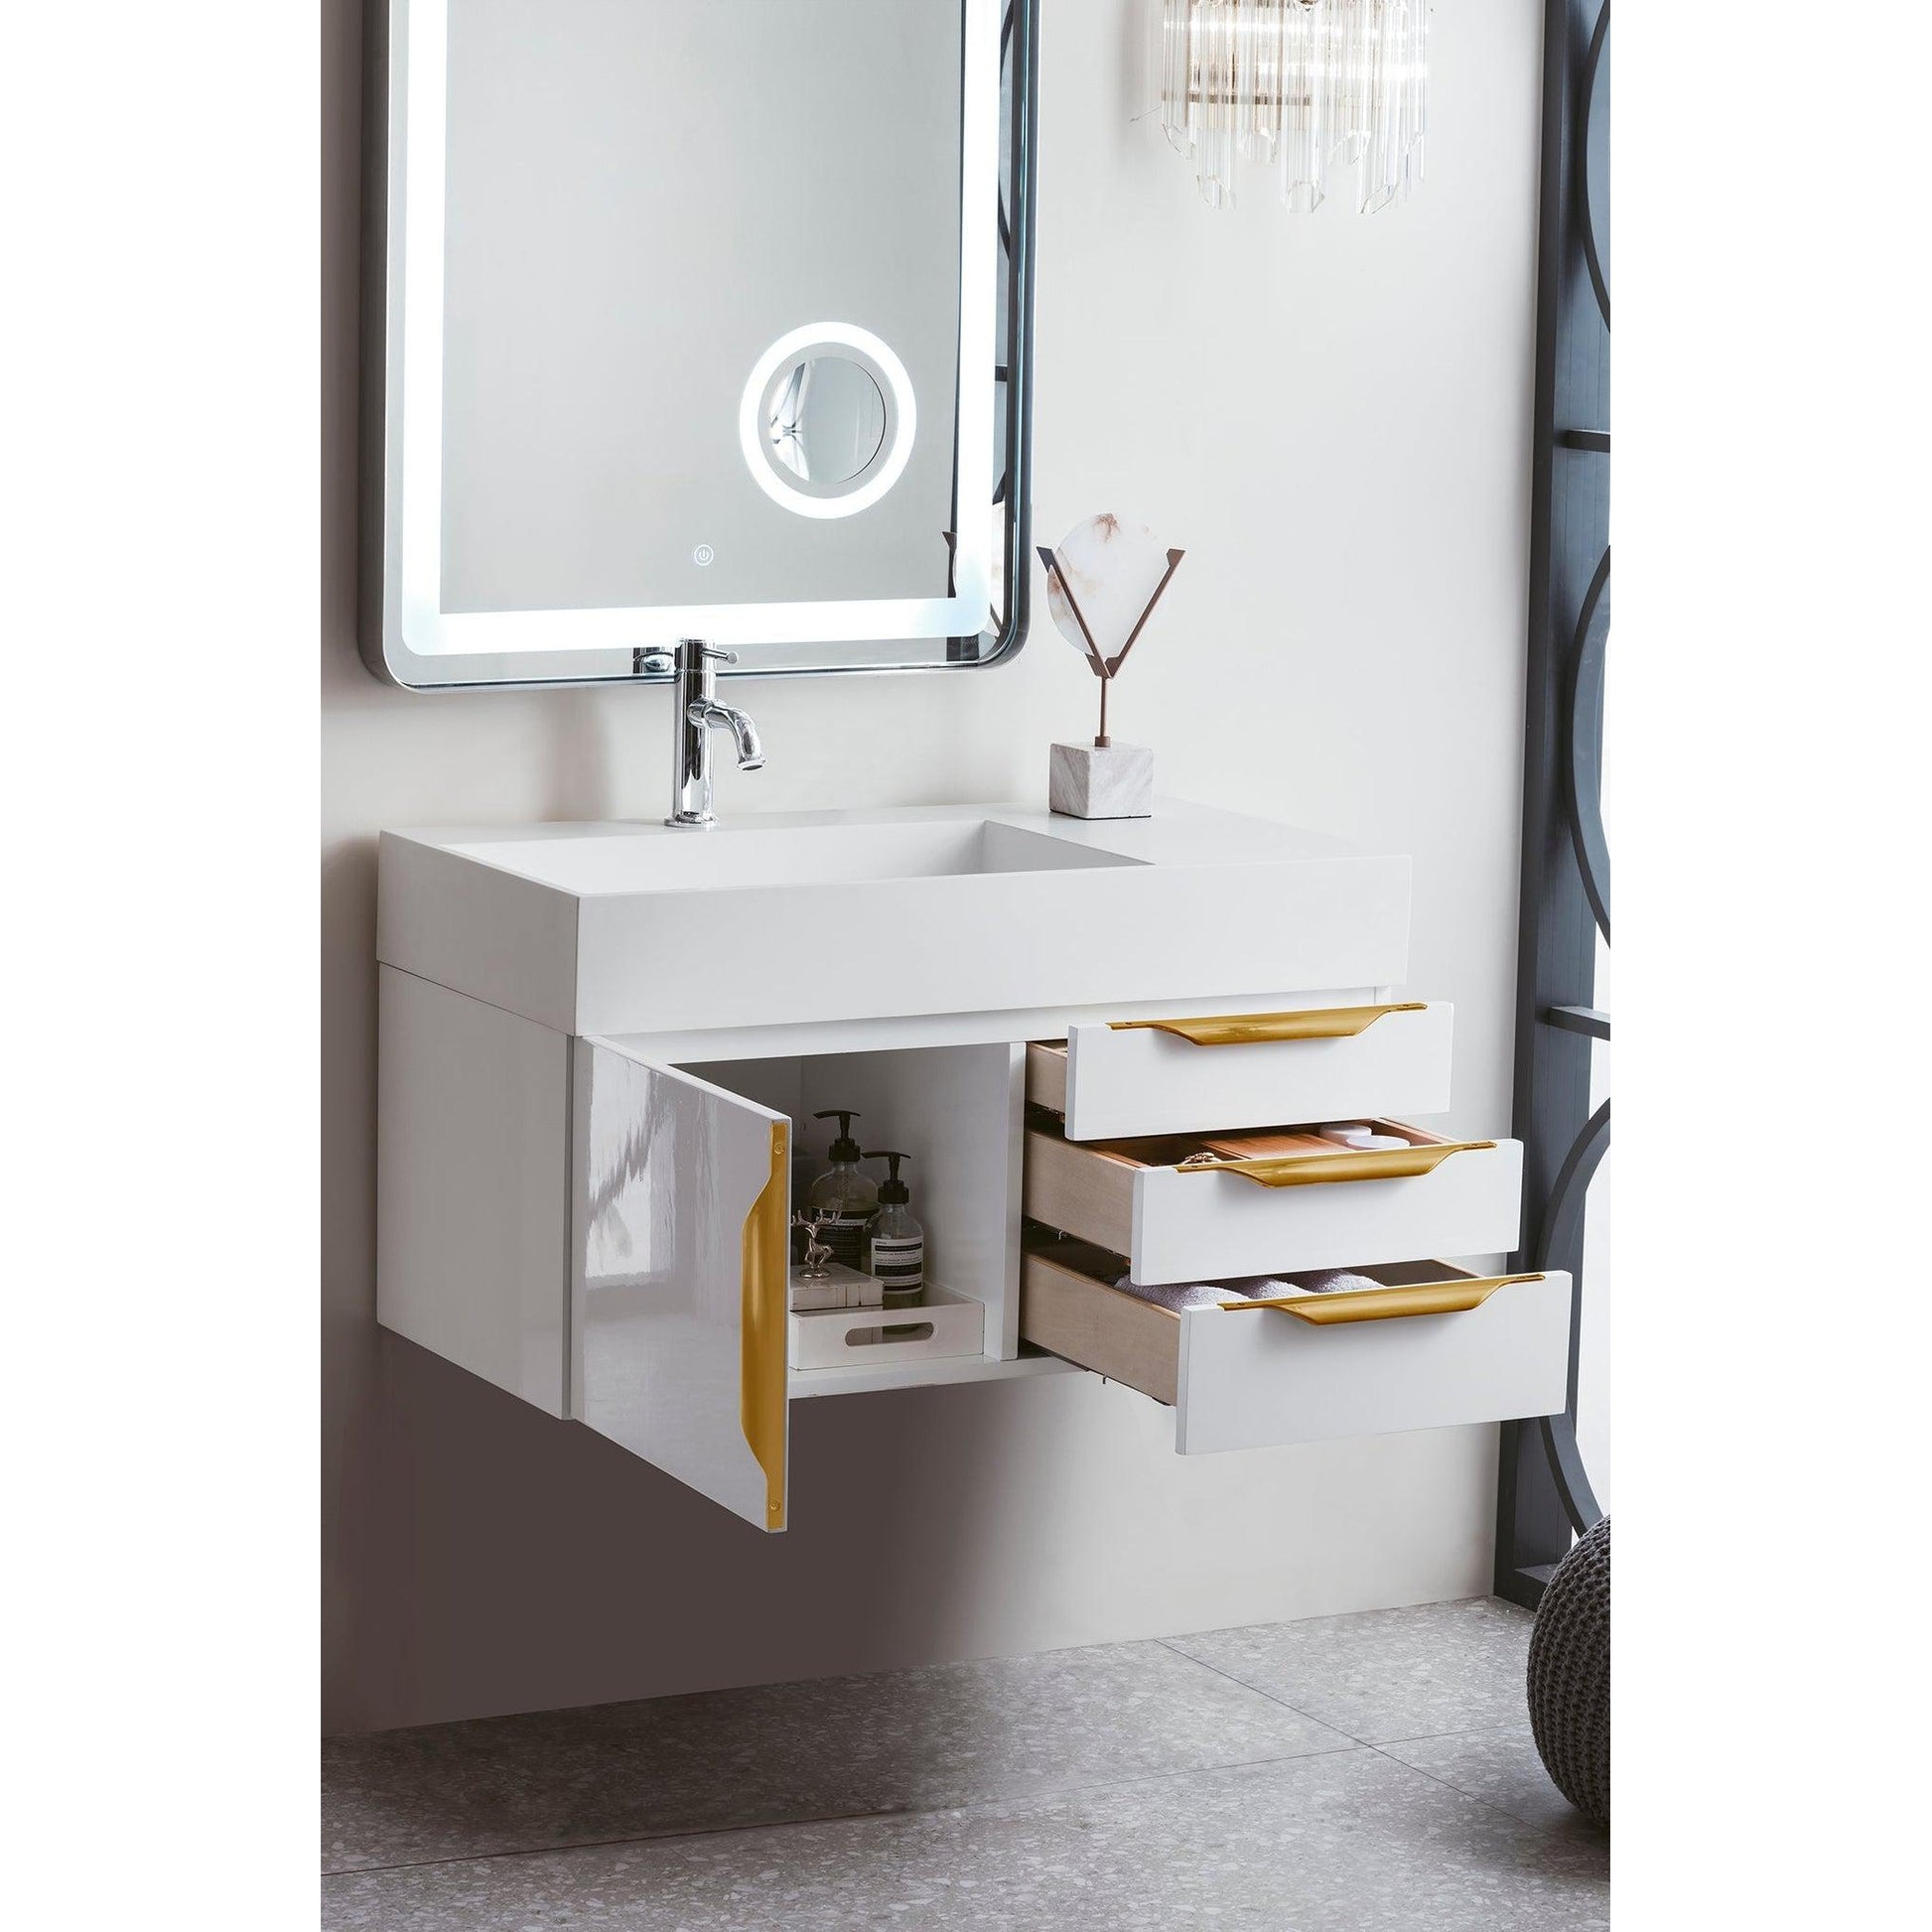 Mercer Island Wall Mounted Double Bathroom Vanity Cabinet with